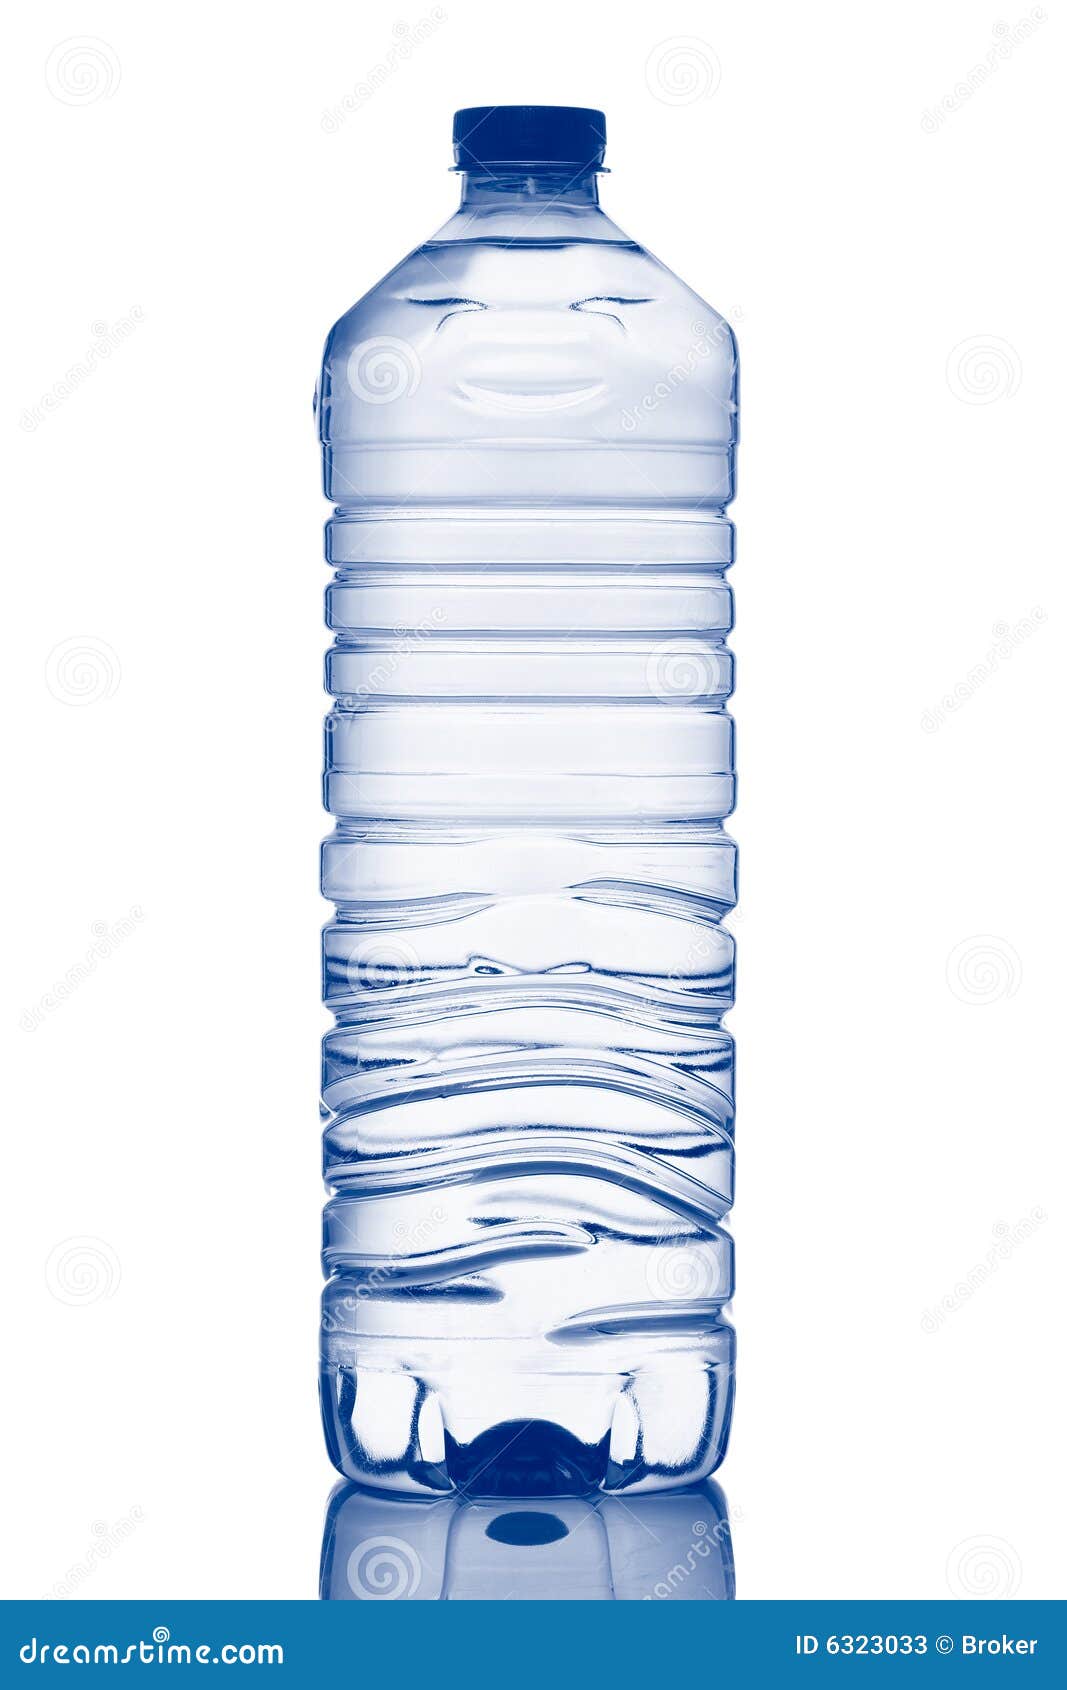 bouteille eau minérale